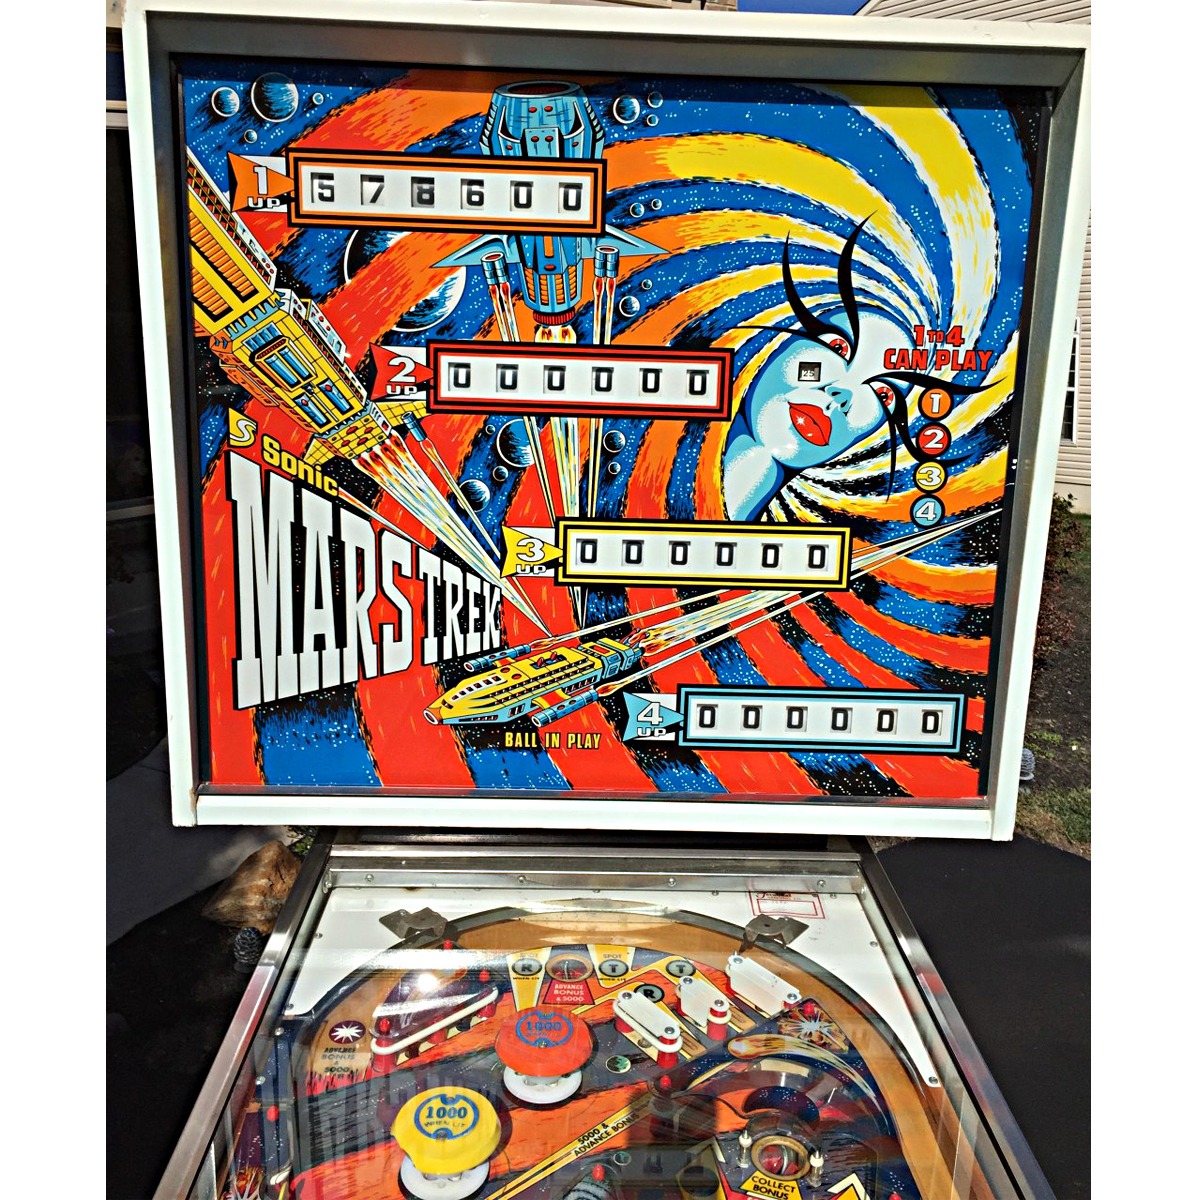 mars trek pinball machine for sale